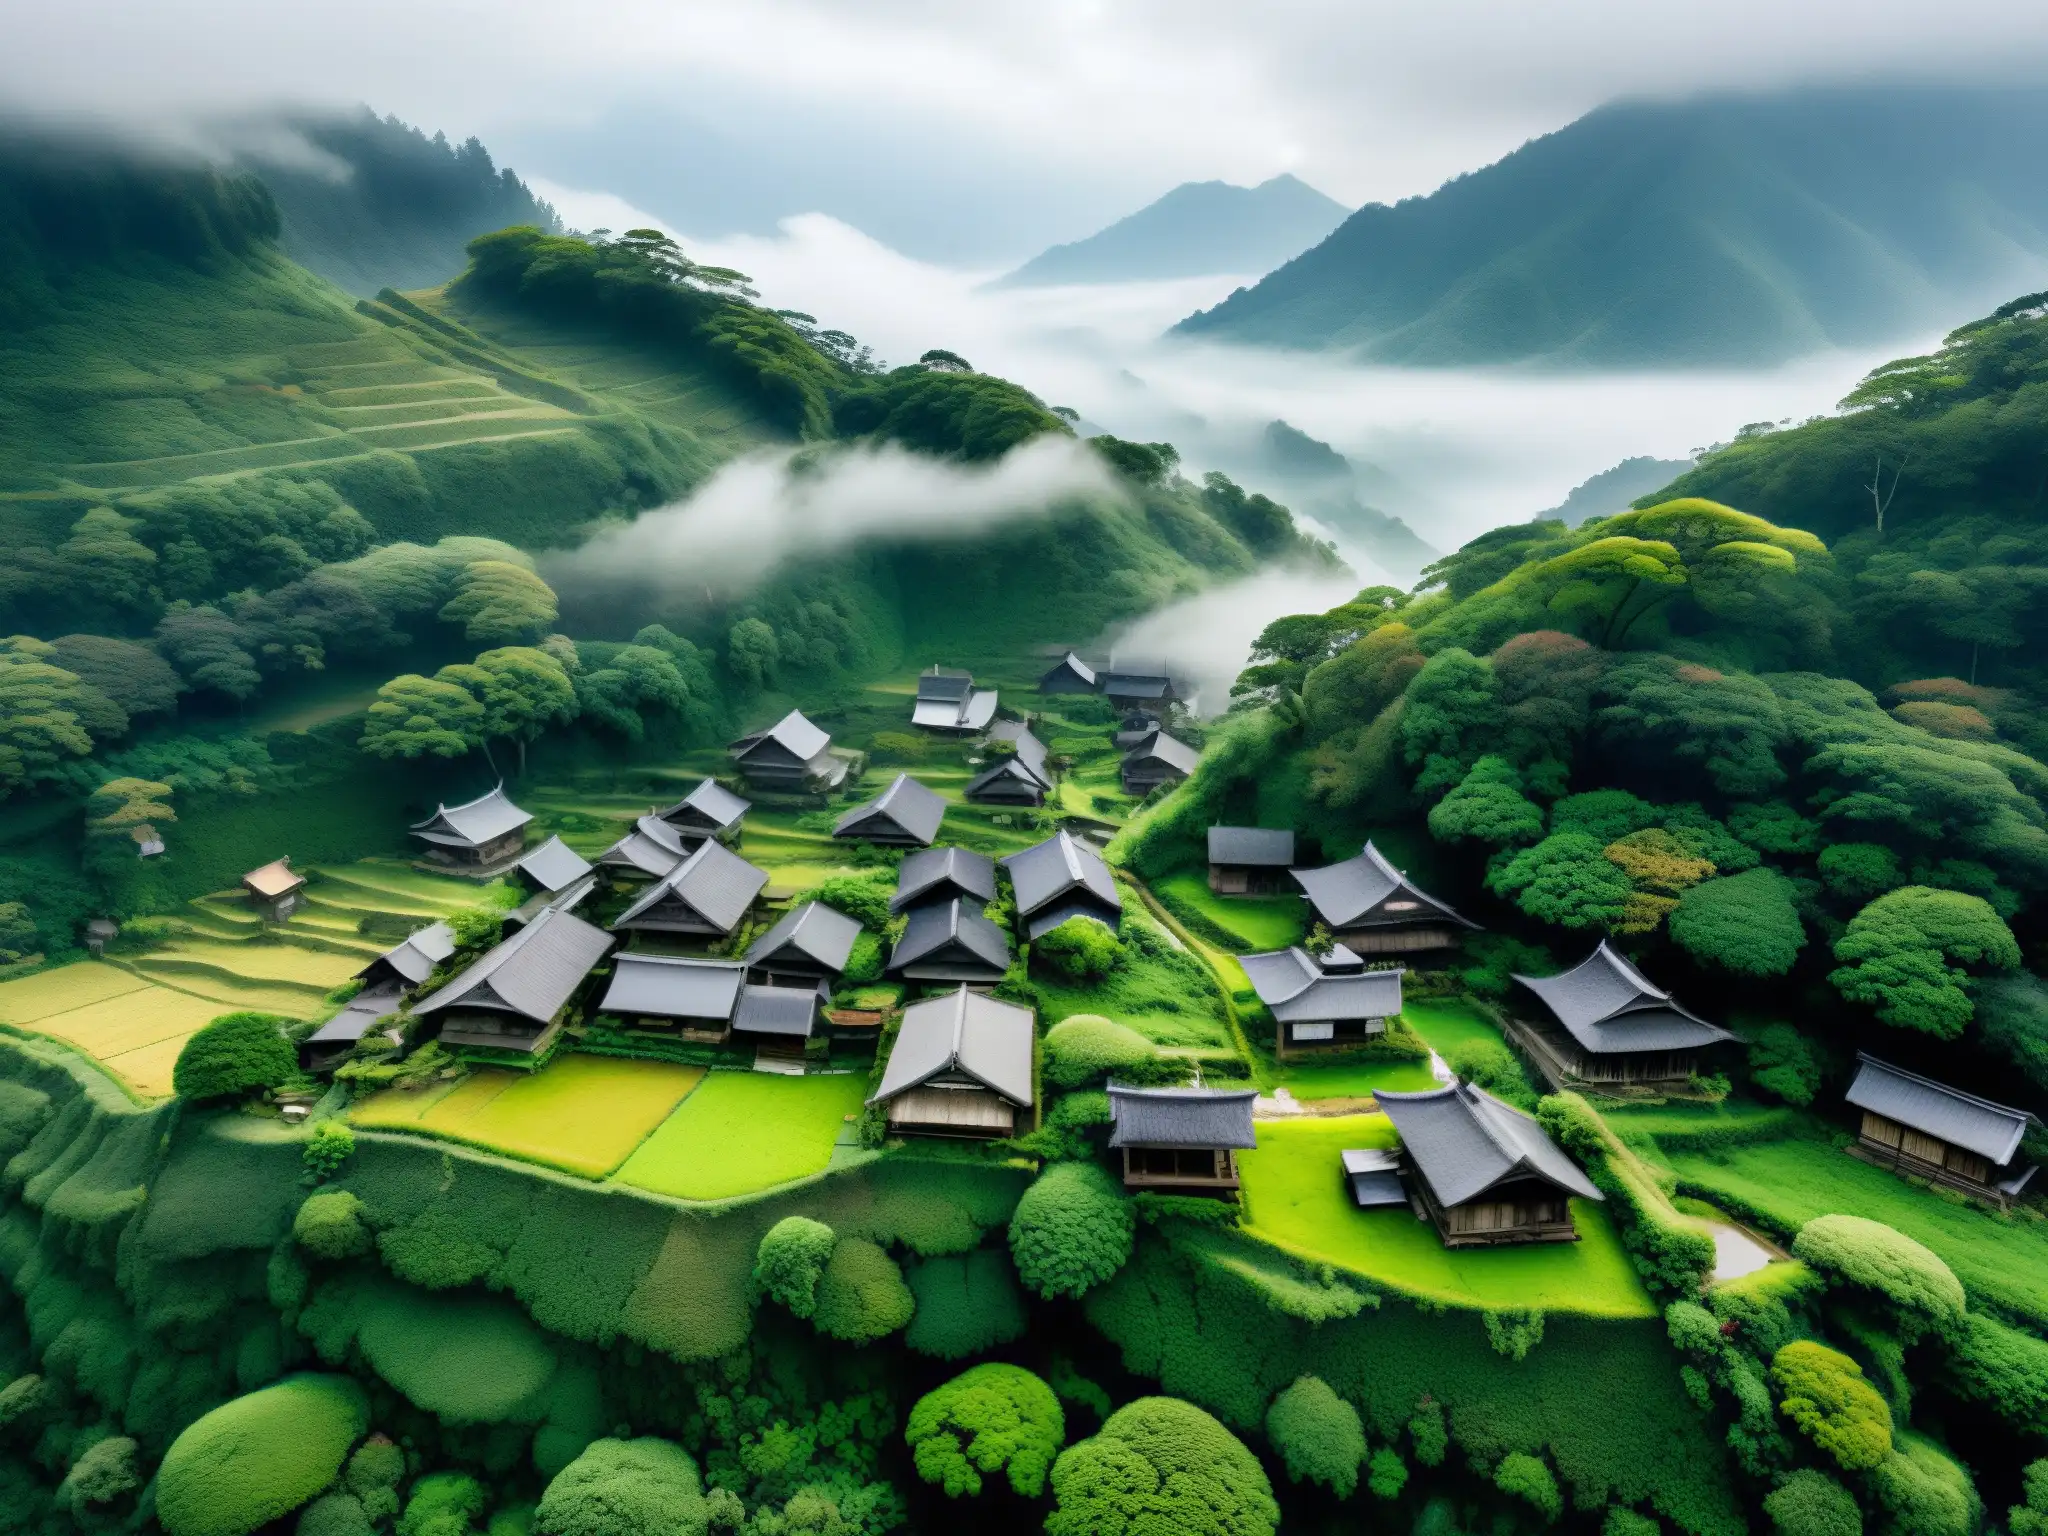 Drones explorando un misterioso pueblo japonés abandonado, envuelto en neblina y rodeado de naturaleza exuberante